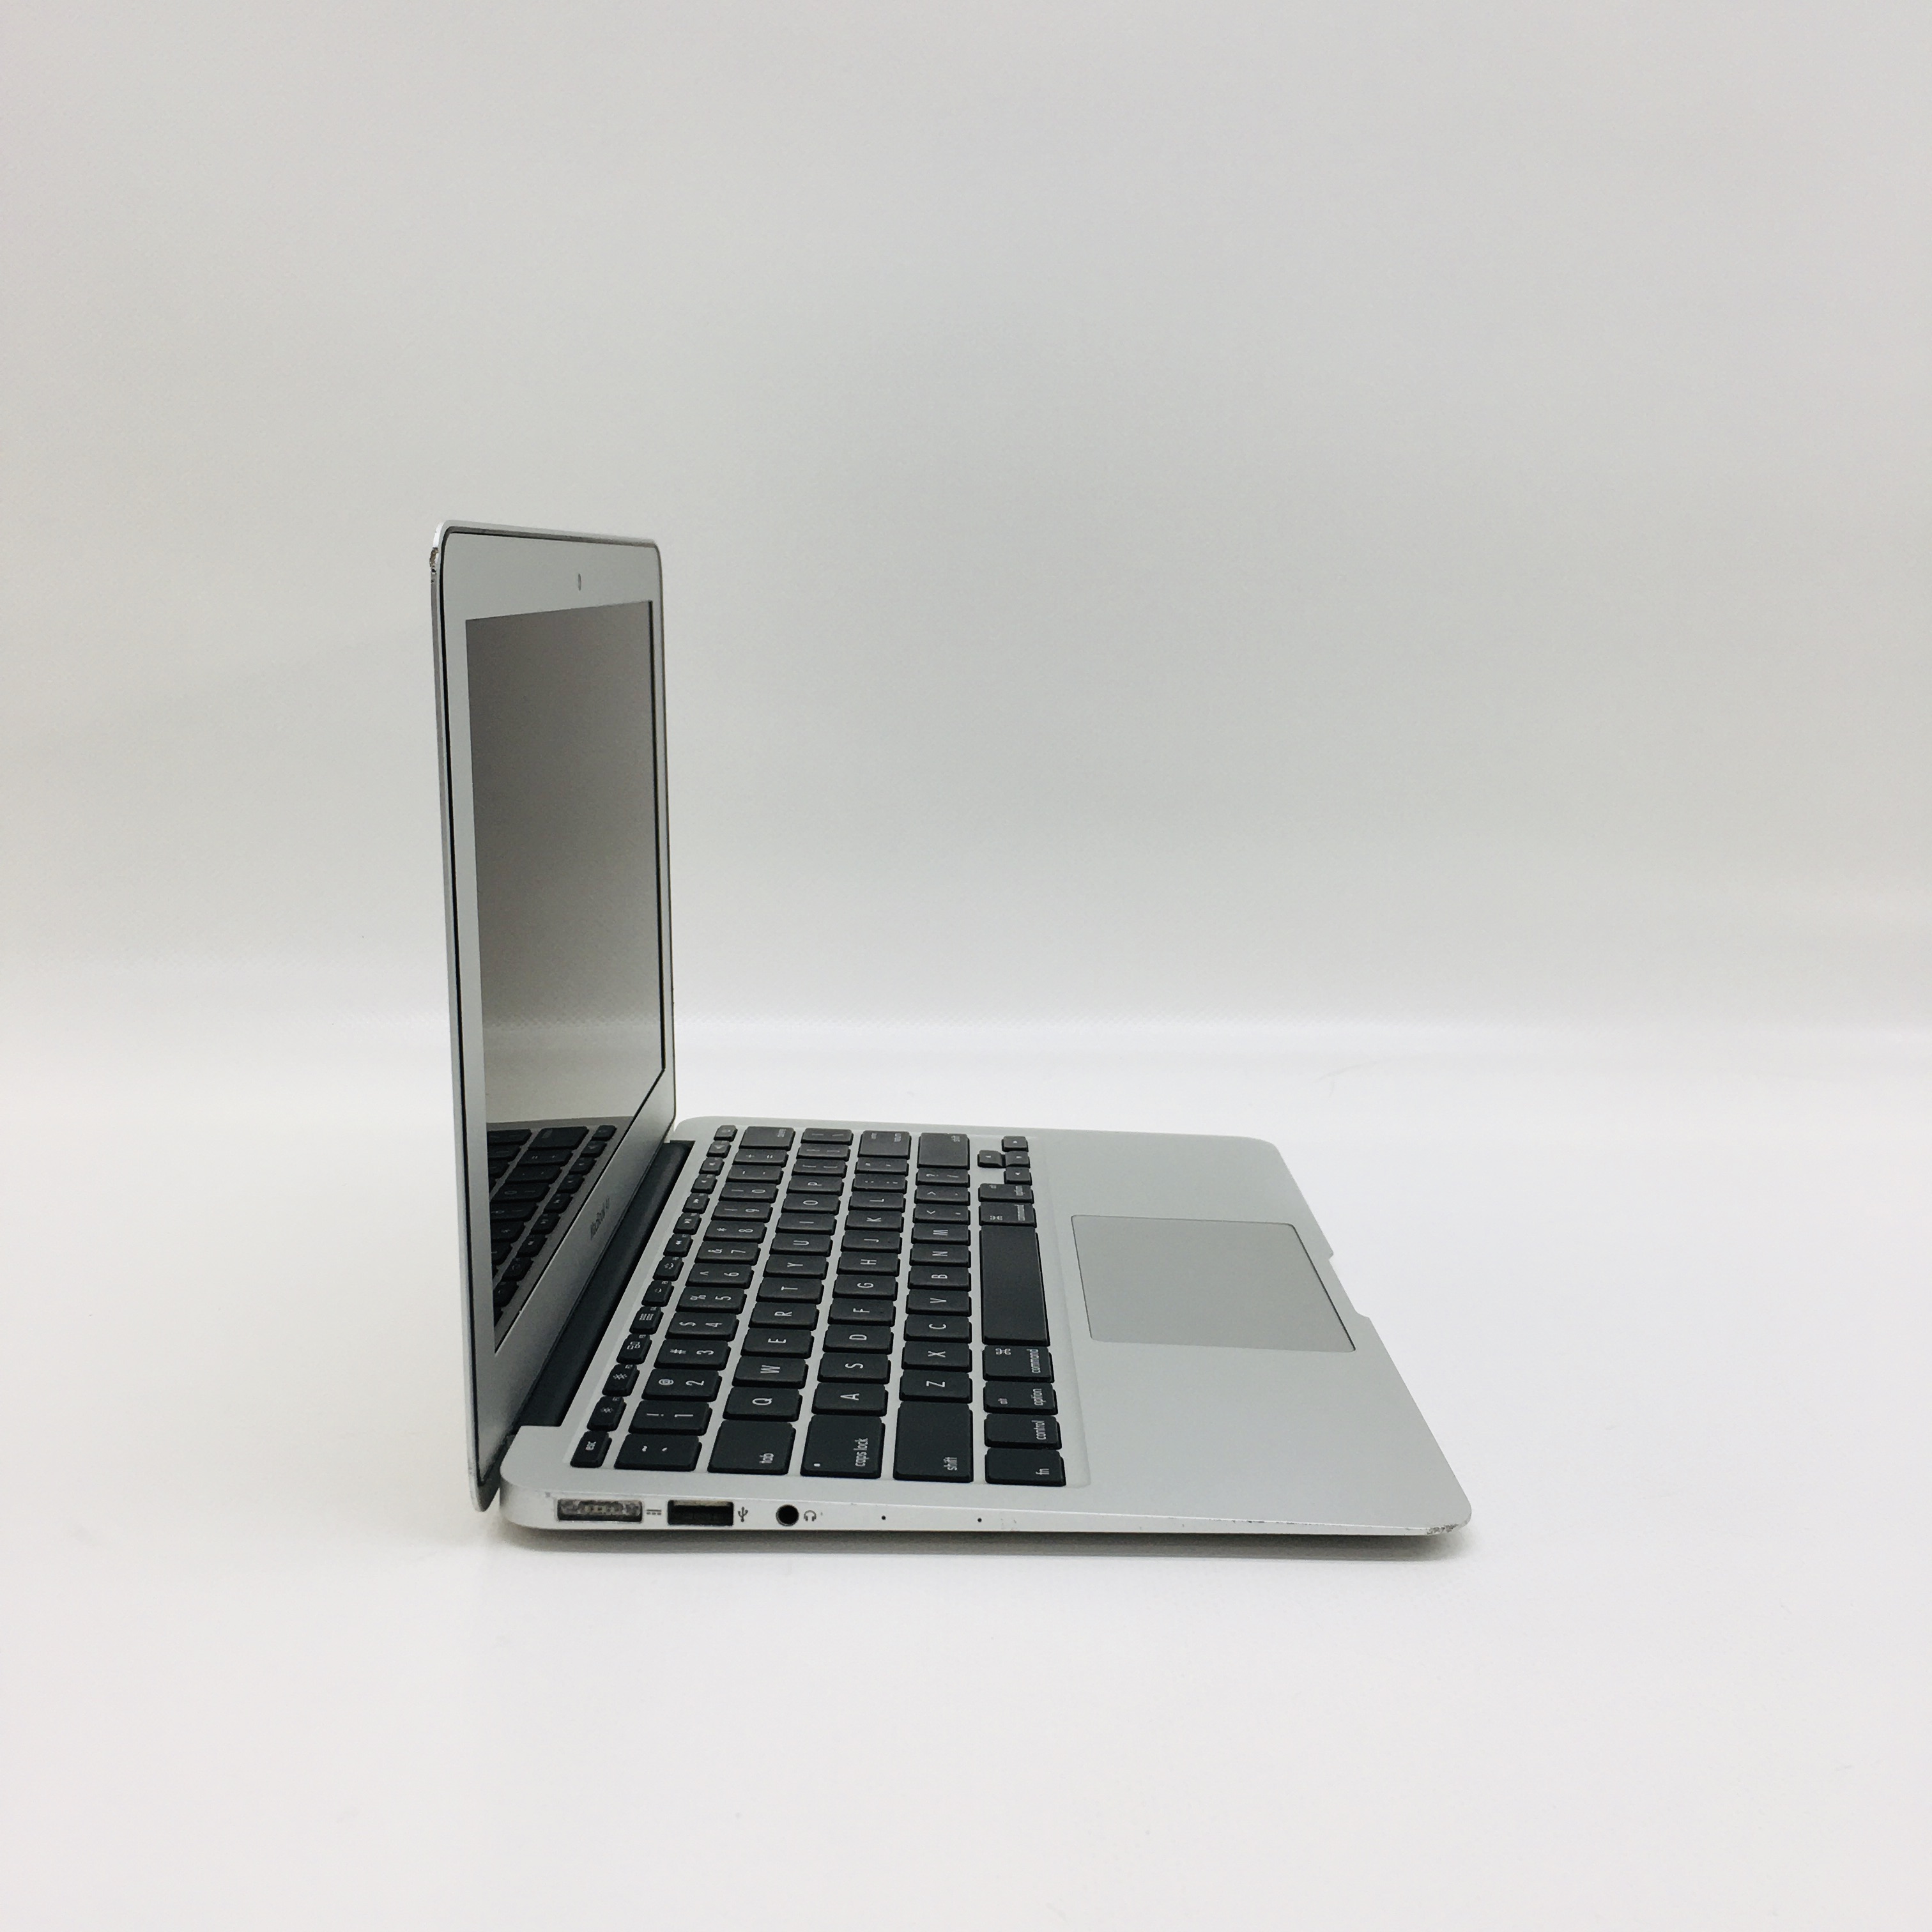 MacBook Air 11" Mid 2013 (Intel Core i5 1.3 GHz 4 GB RAM 128 GB SSD), Intel Core i5 1.3 GHz, 4 GB RAM, 128 GB SSD, image 2